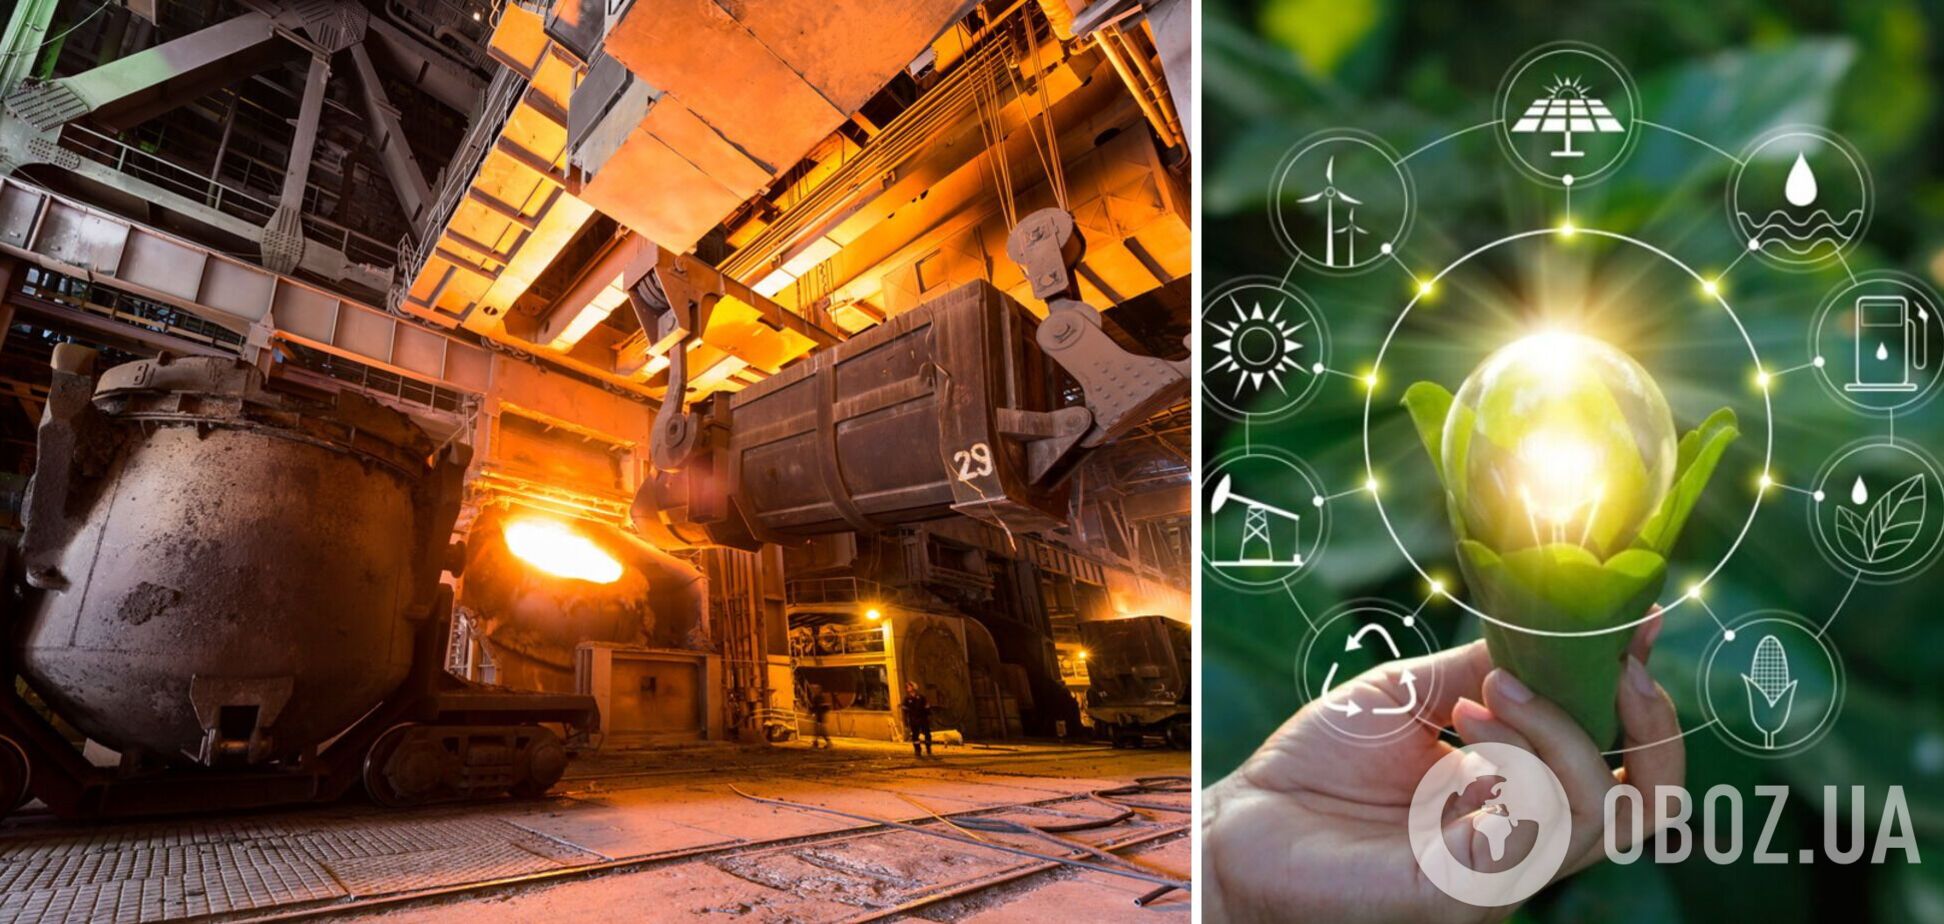 Переход к 'зеленой' металлургии потребует активного использования искусственного интеллекта, – Рыженков